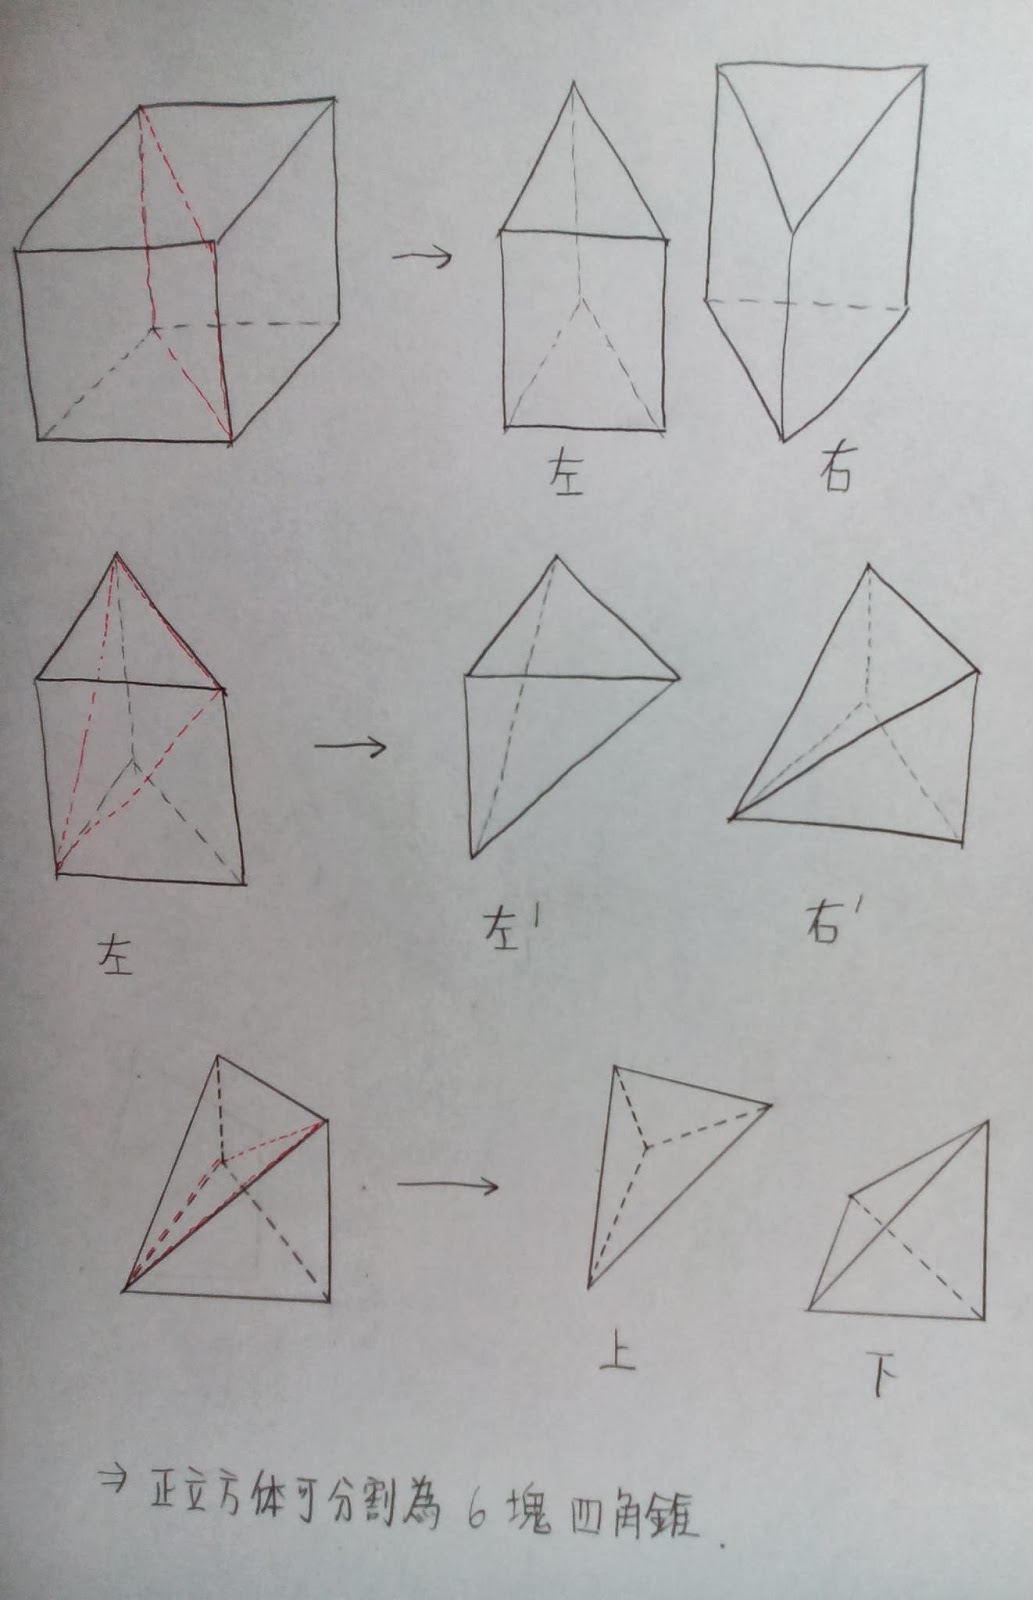 宇宙數學教室 正立方體可分割為6塊四角錐